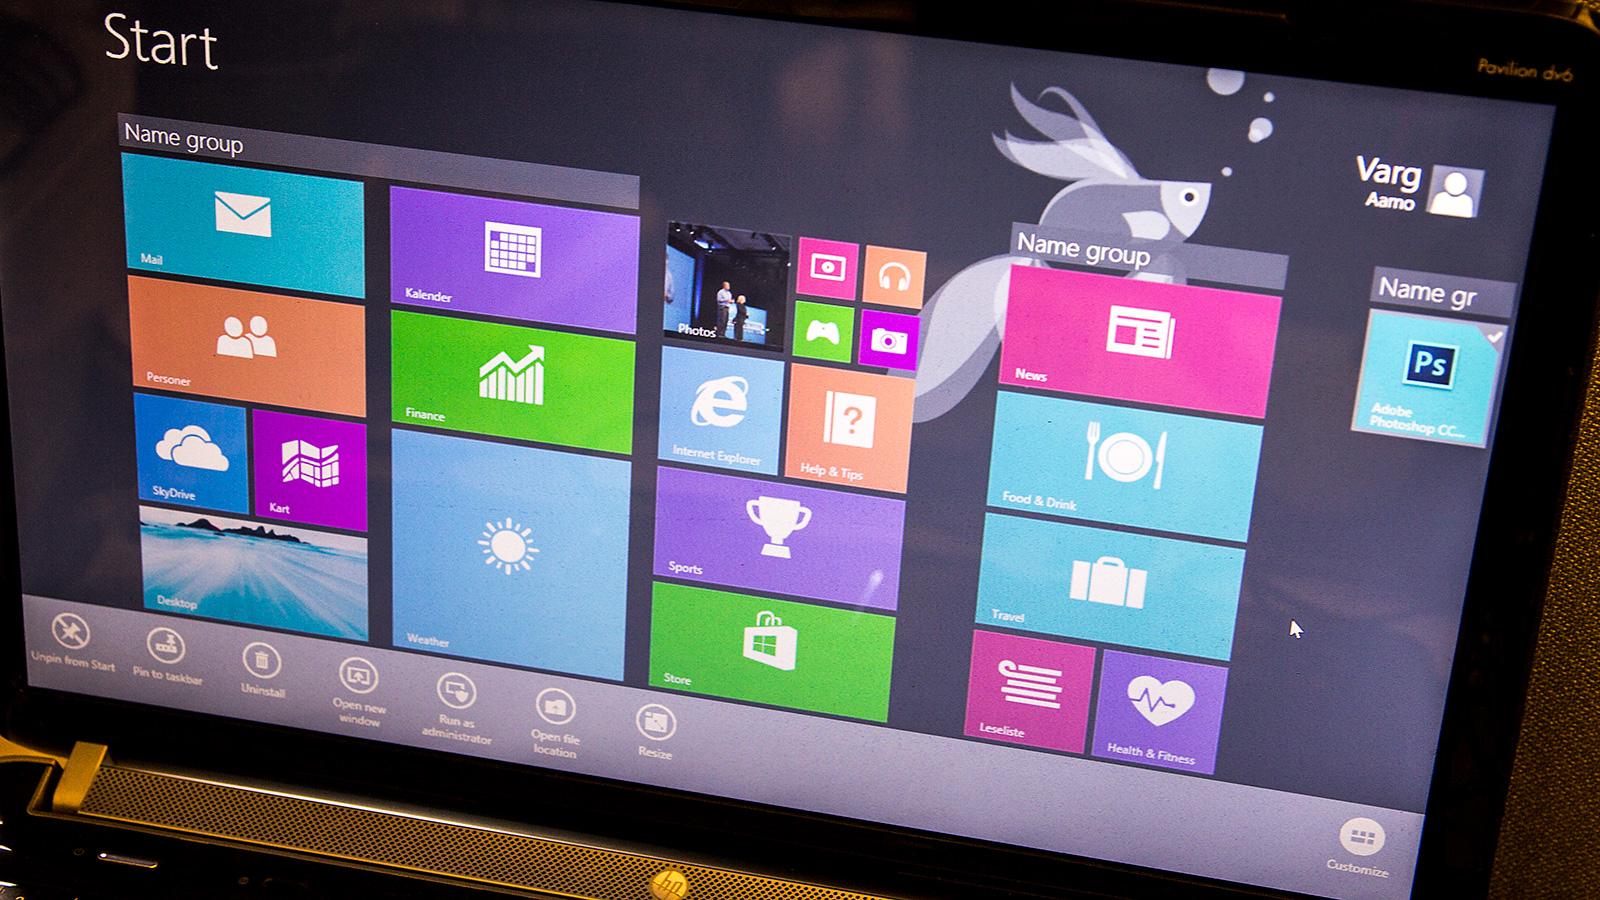 Det er kanskje startskjermen som har blitt mest kjent på Windows 8, men bak kulissene ligger det mye mer.Foto: Varg Aamo, Hardware.no